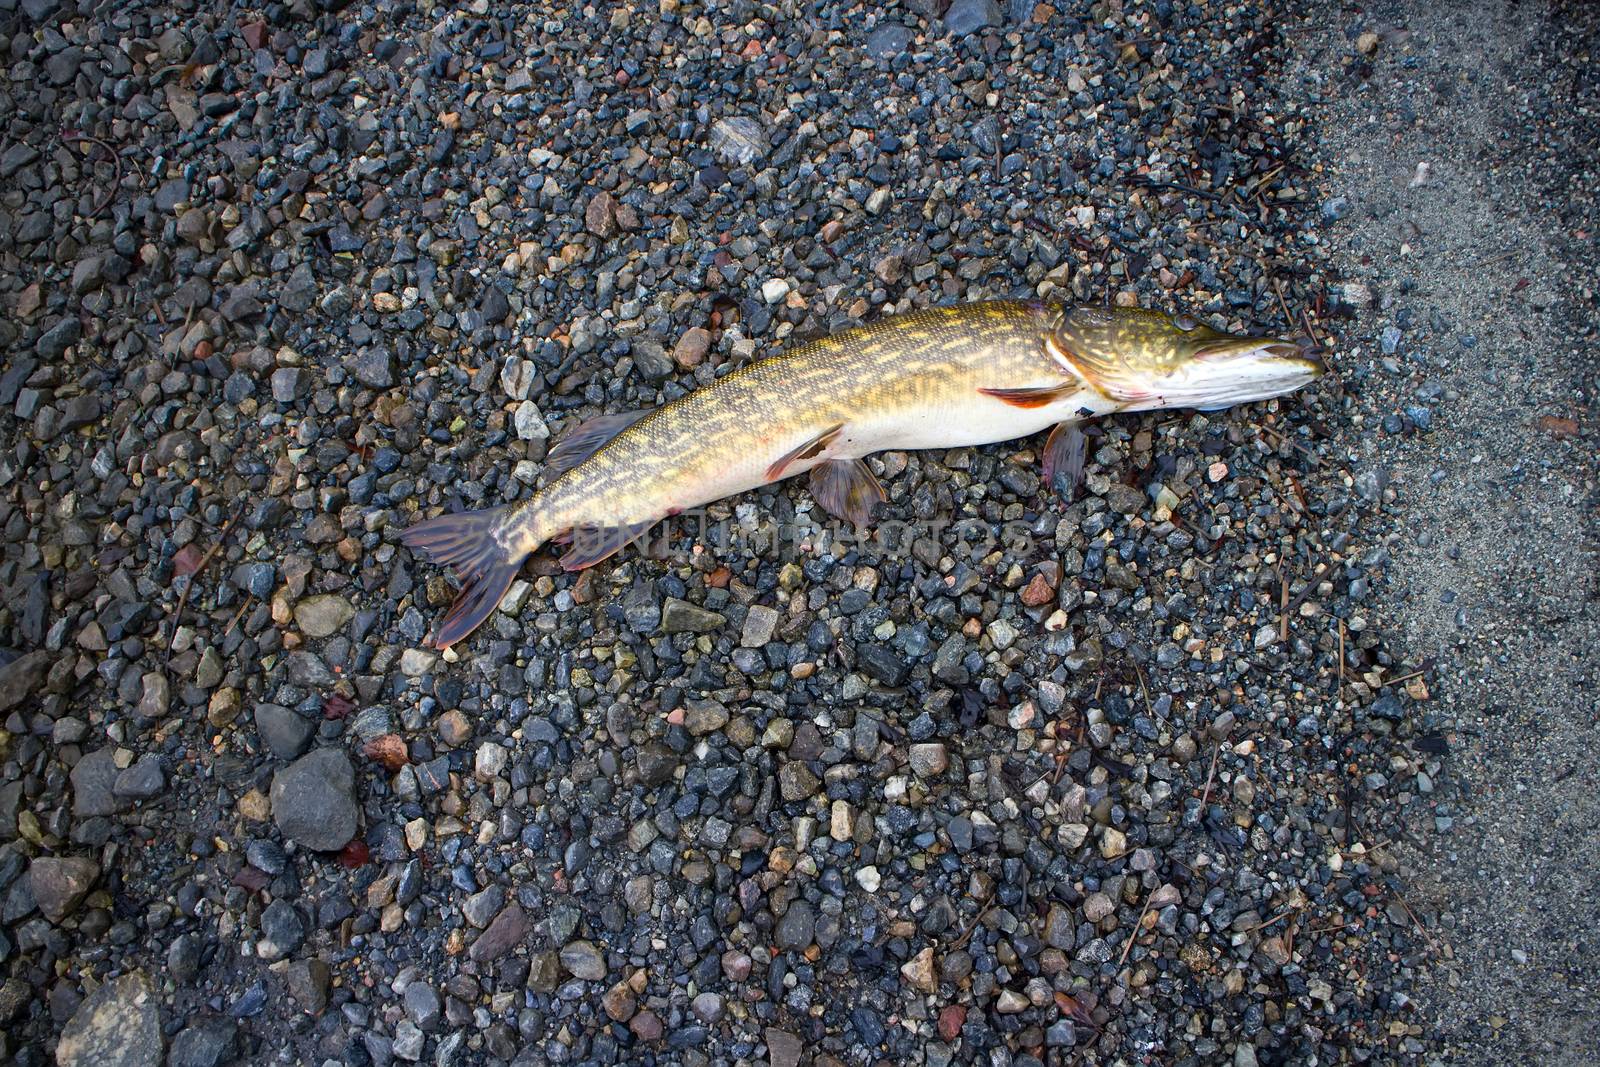 pike fishing big Northern fish in rivers